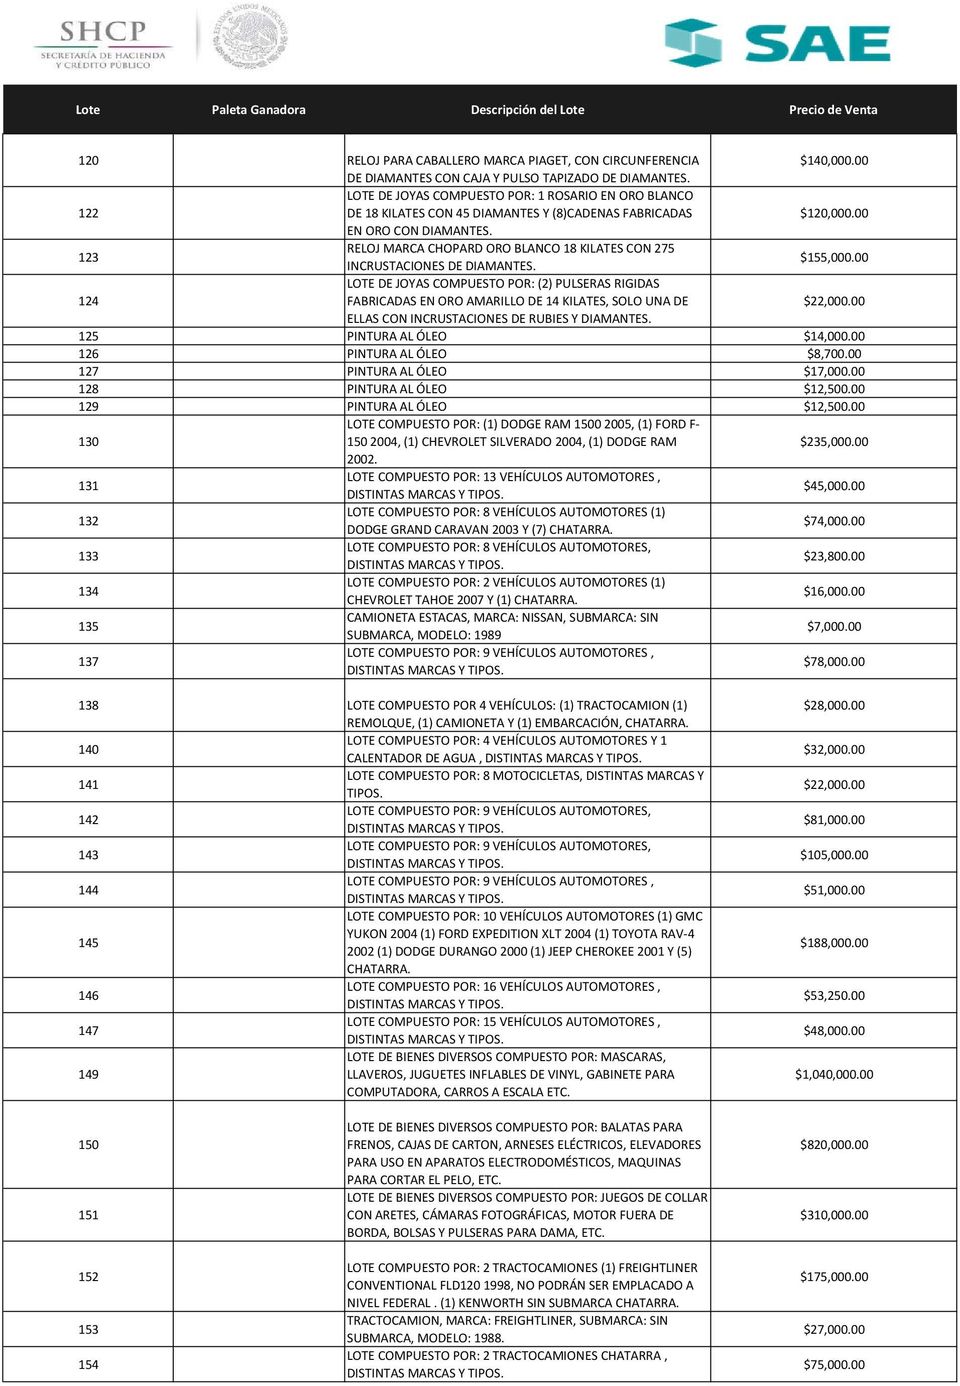 123 RELOJ MARCA CHOPARD ORO BLANCO 18 KILATES CON 275 INCRUSTACIONES DE DIAMANTES. $155,000.